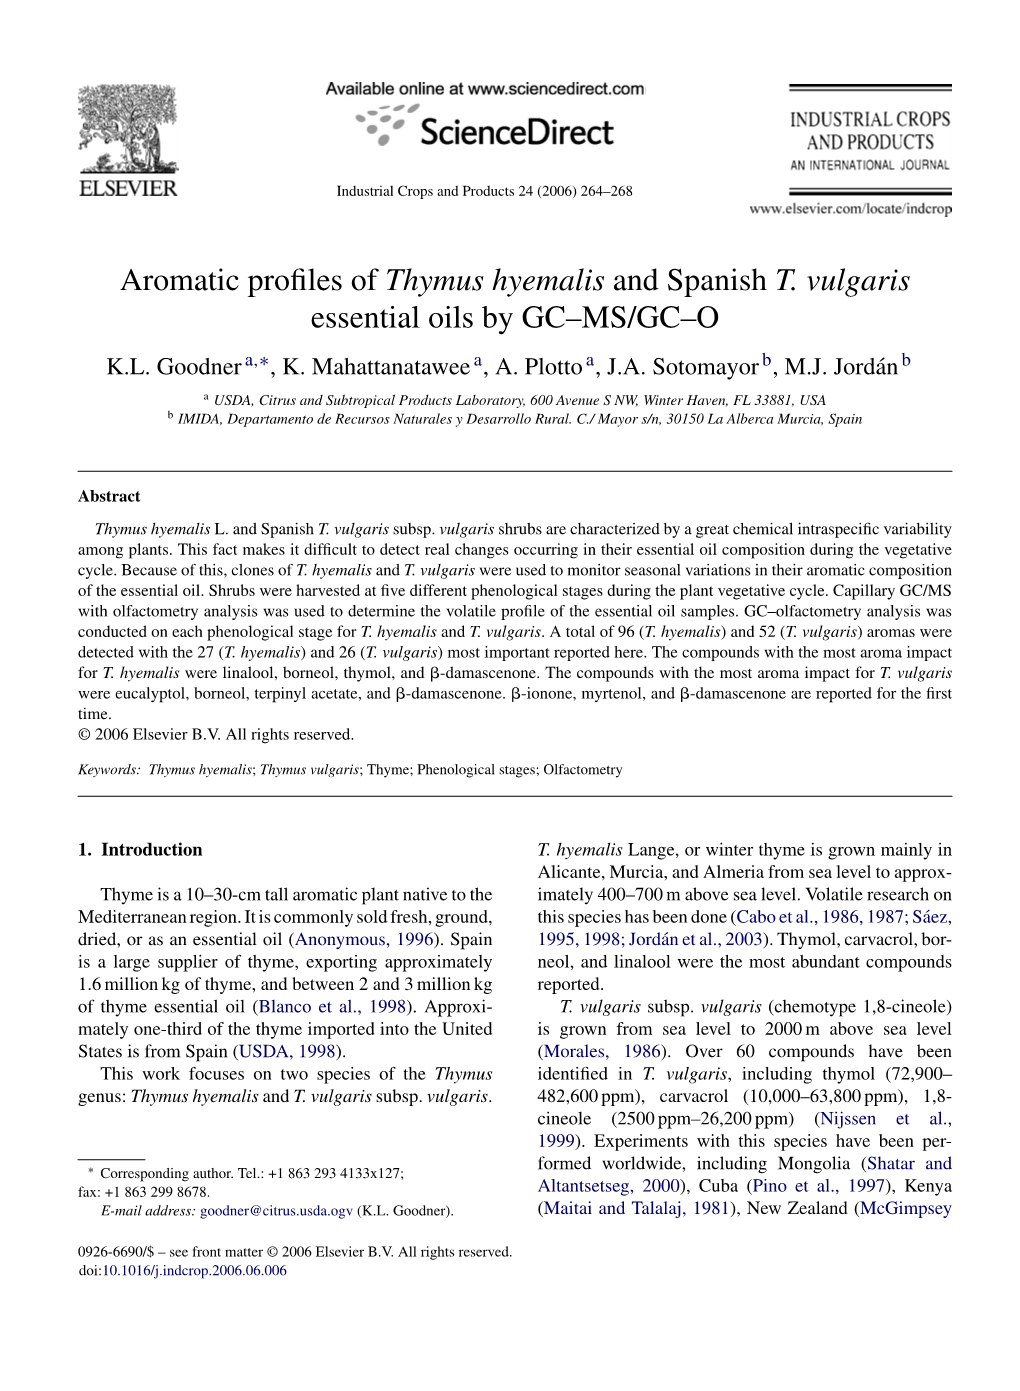 Aromatic Profiles of Thymus Hyemalis and Spanish T. Vulgaris Essential